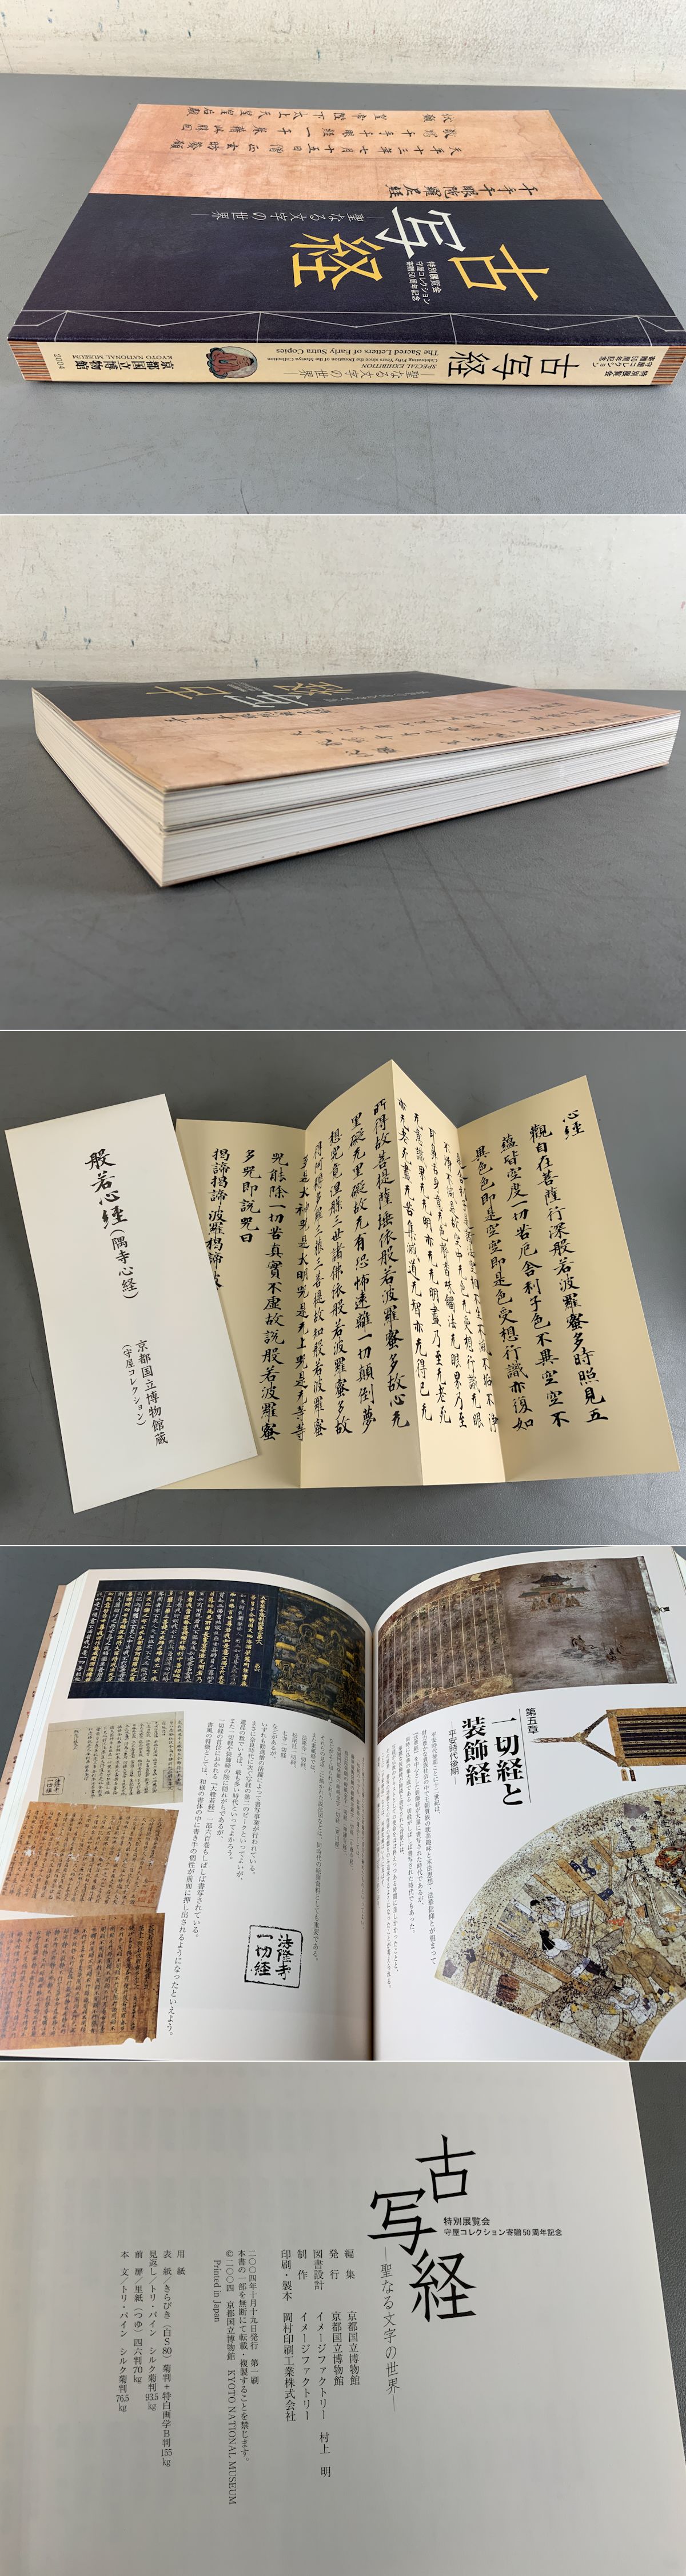 アート/エンタメ古写経　聖なる文字の世界　特別展覧会守屋コレクション寄贈50周年記念